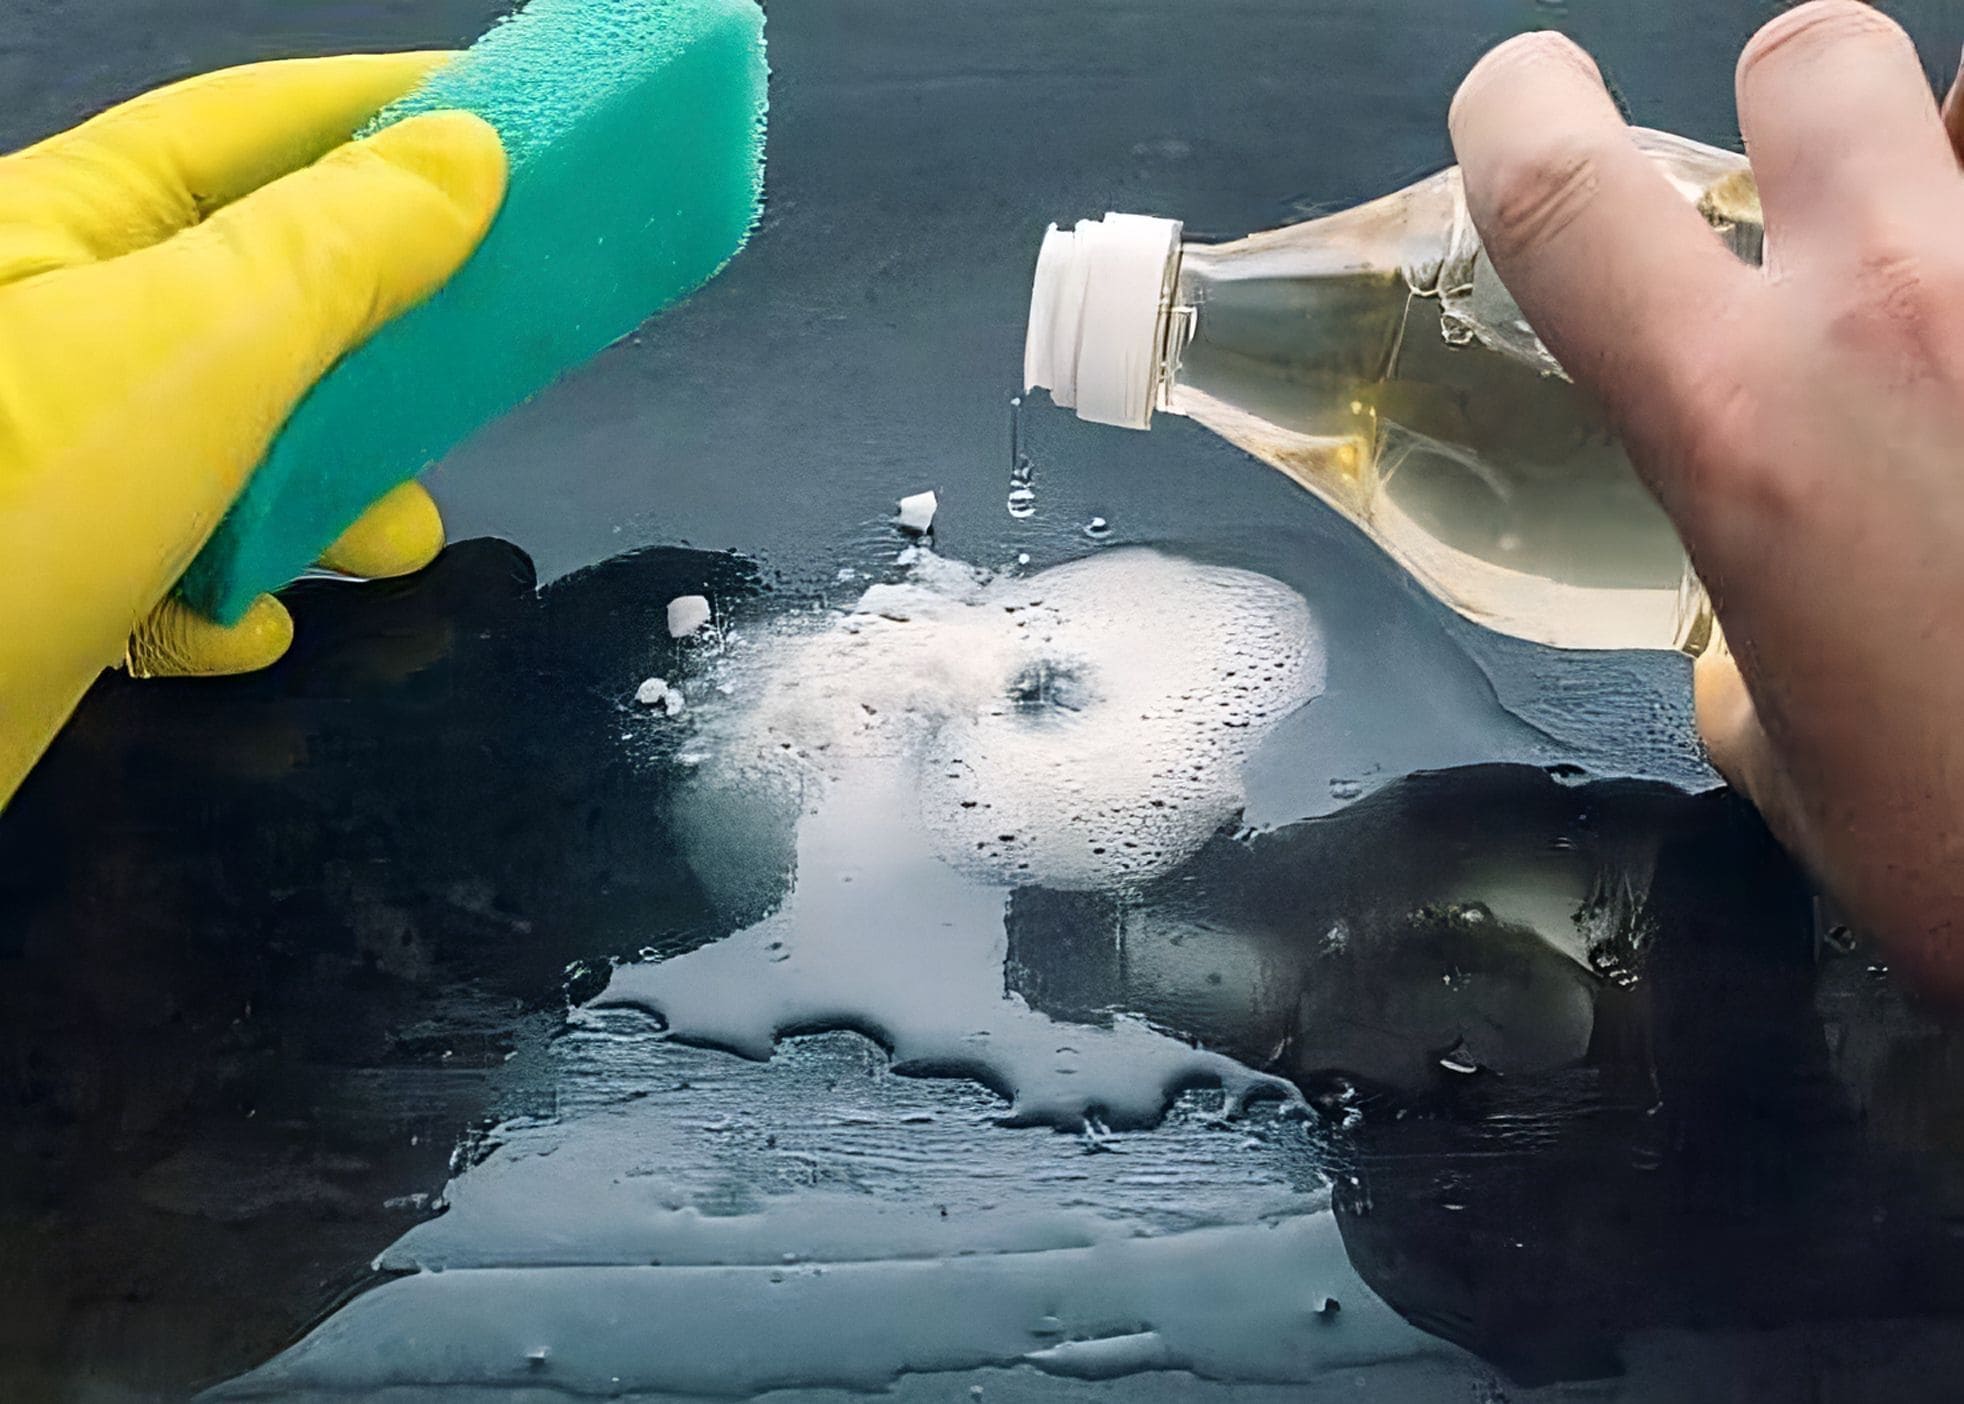 Une aide ménagère nettoie une surface avec du vinaigre blanc.